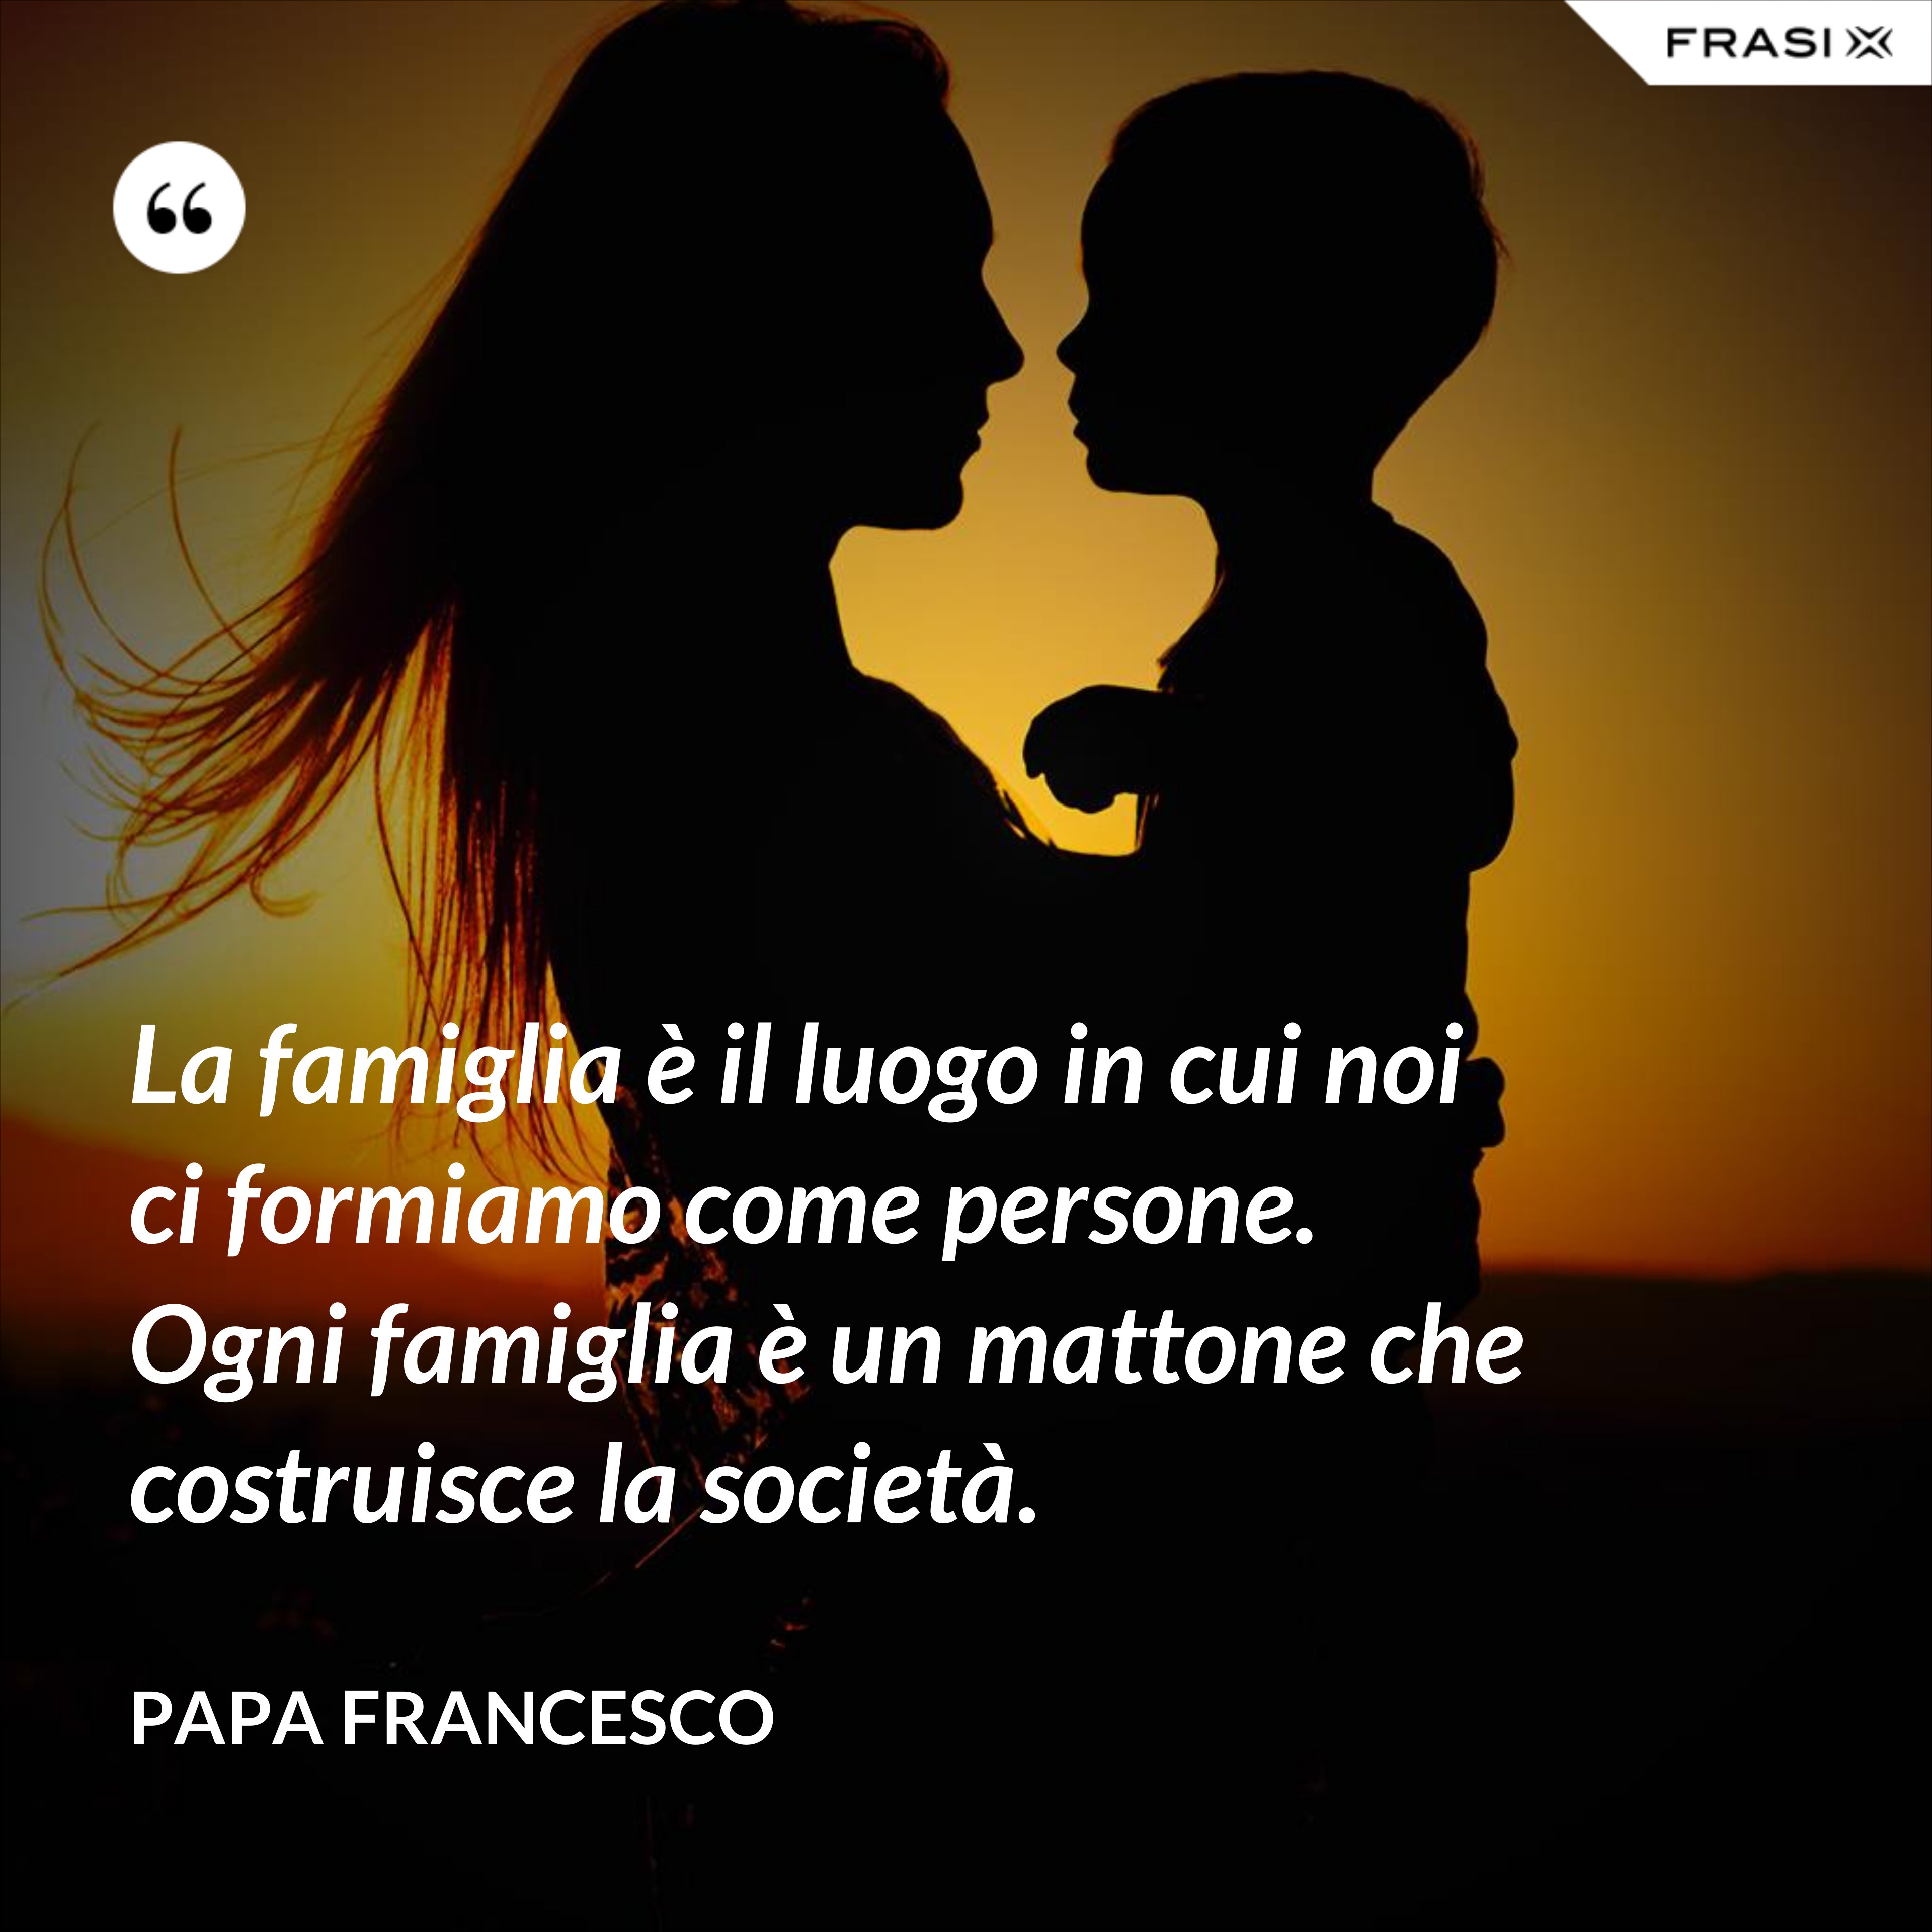 La famiglia è il luogo in cui noi ci formiamo come persone. Ogni famiglia è un mattone che costruisce la società. - Papa Francesco